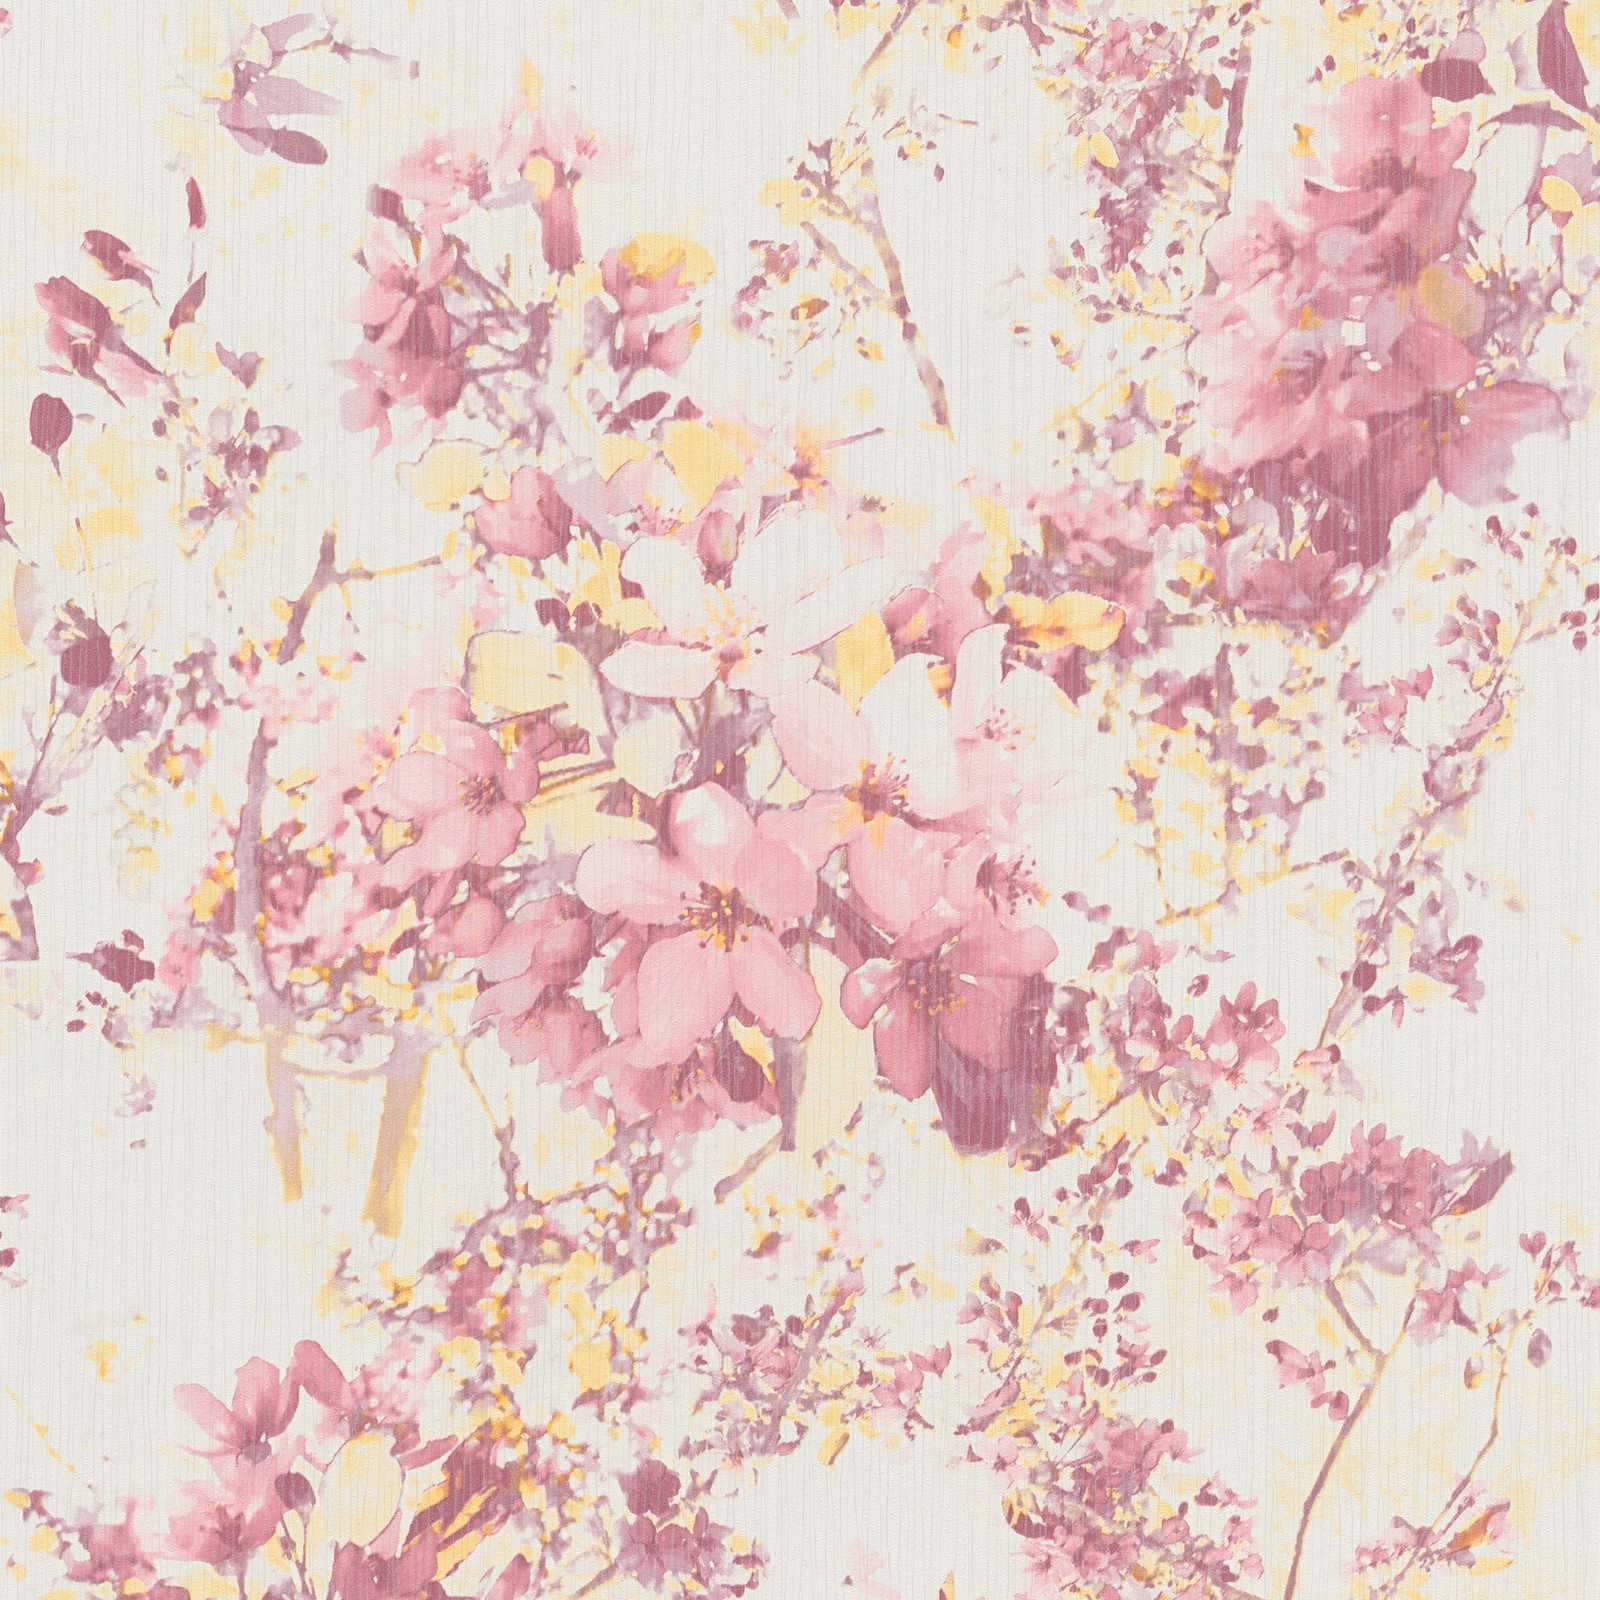 Bloemen vliesbehang met bloemmotief - roze, geel
